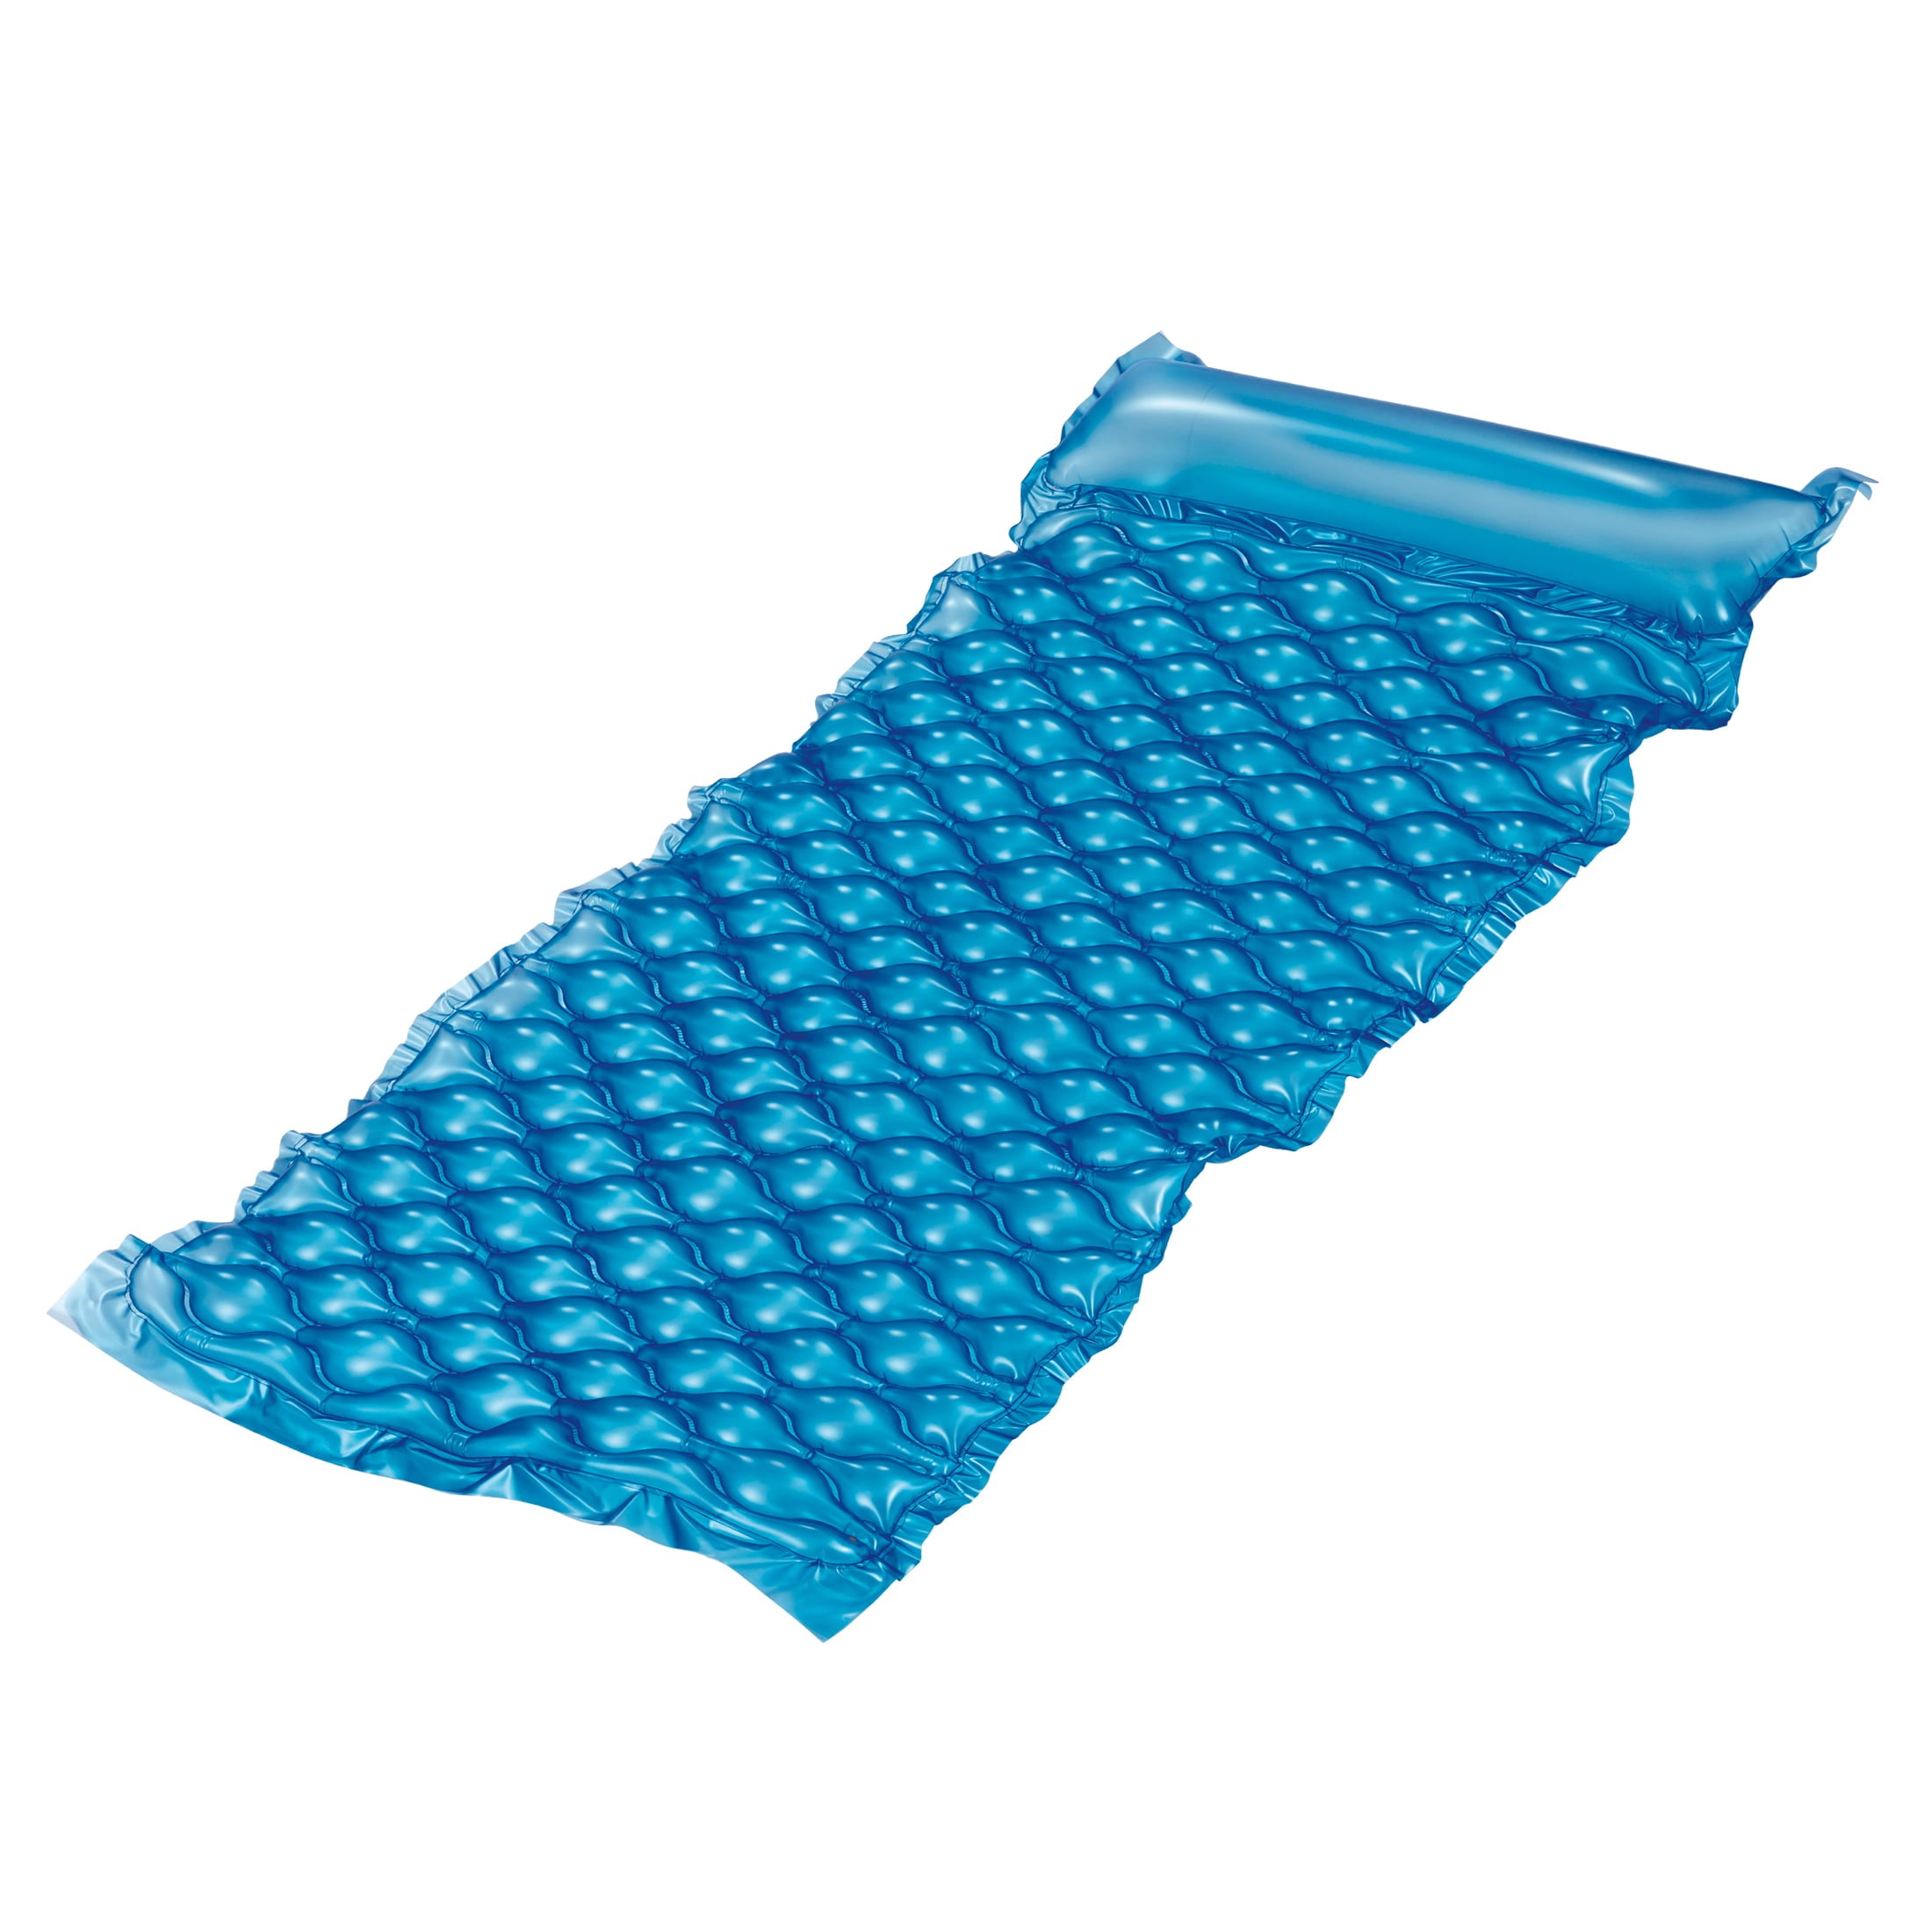 Bluescape Blue Neon Comfort Inflatable Mat, 69